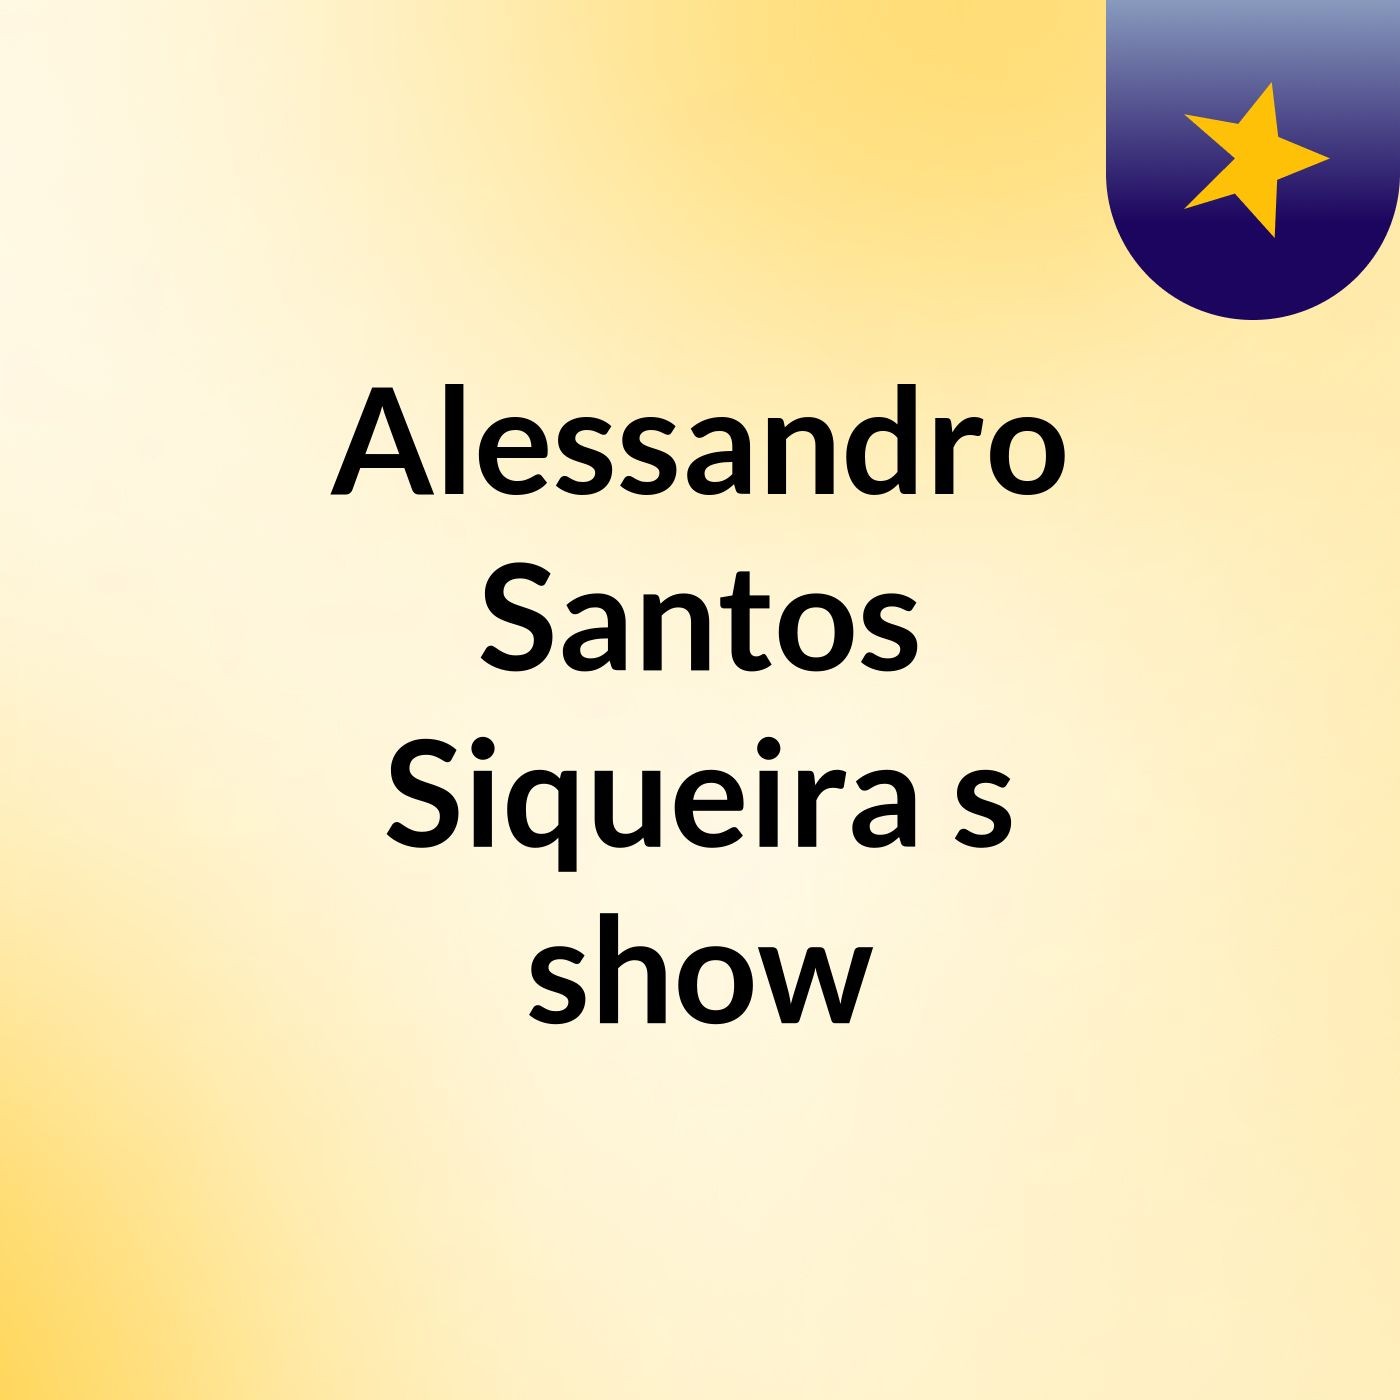 Alessandro Santos Siqueira's show